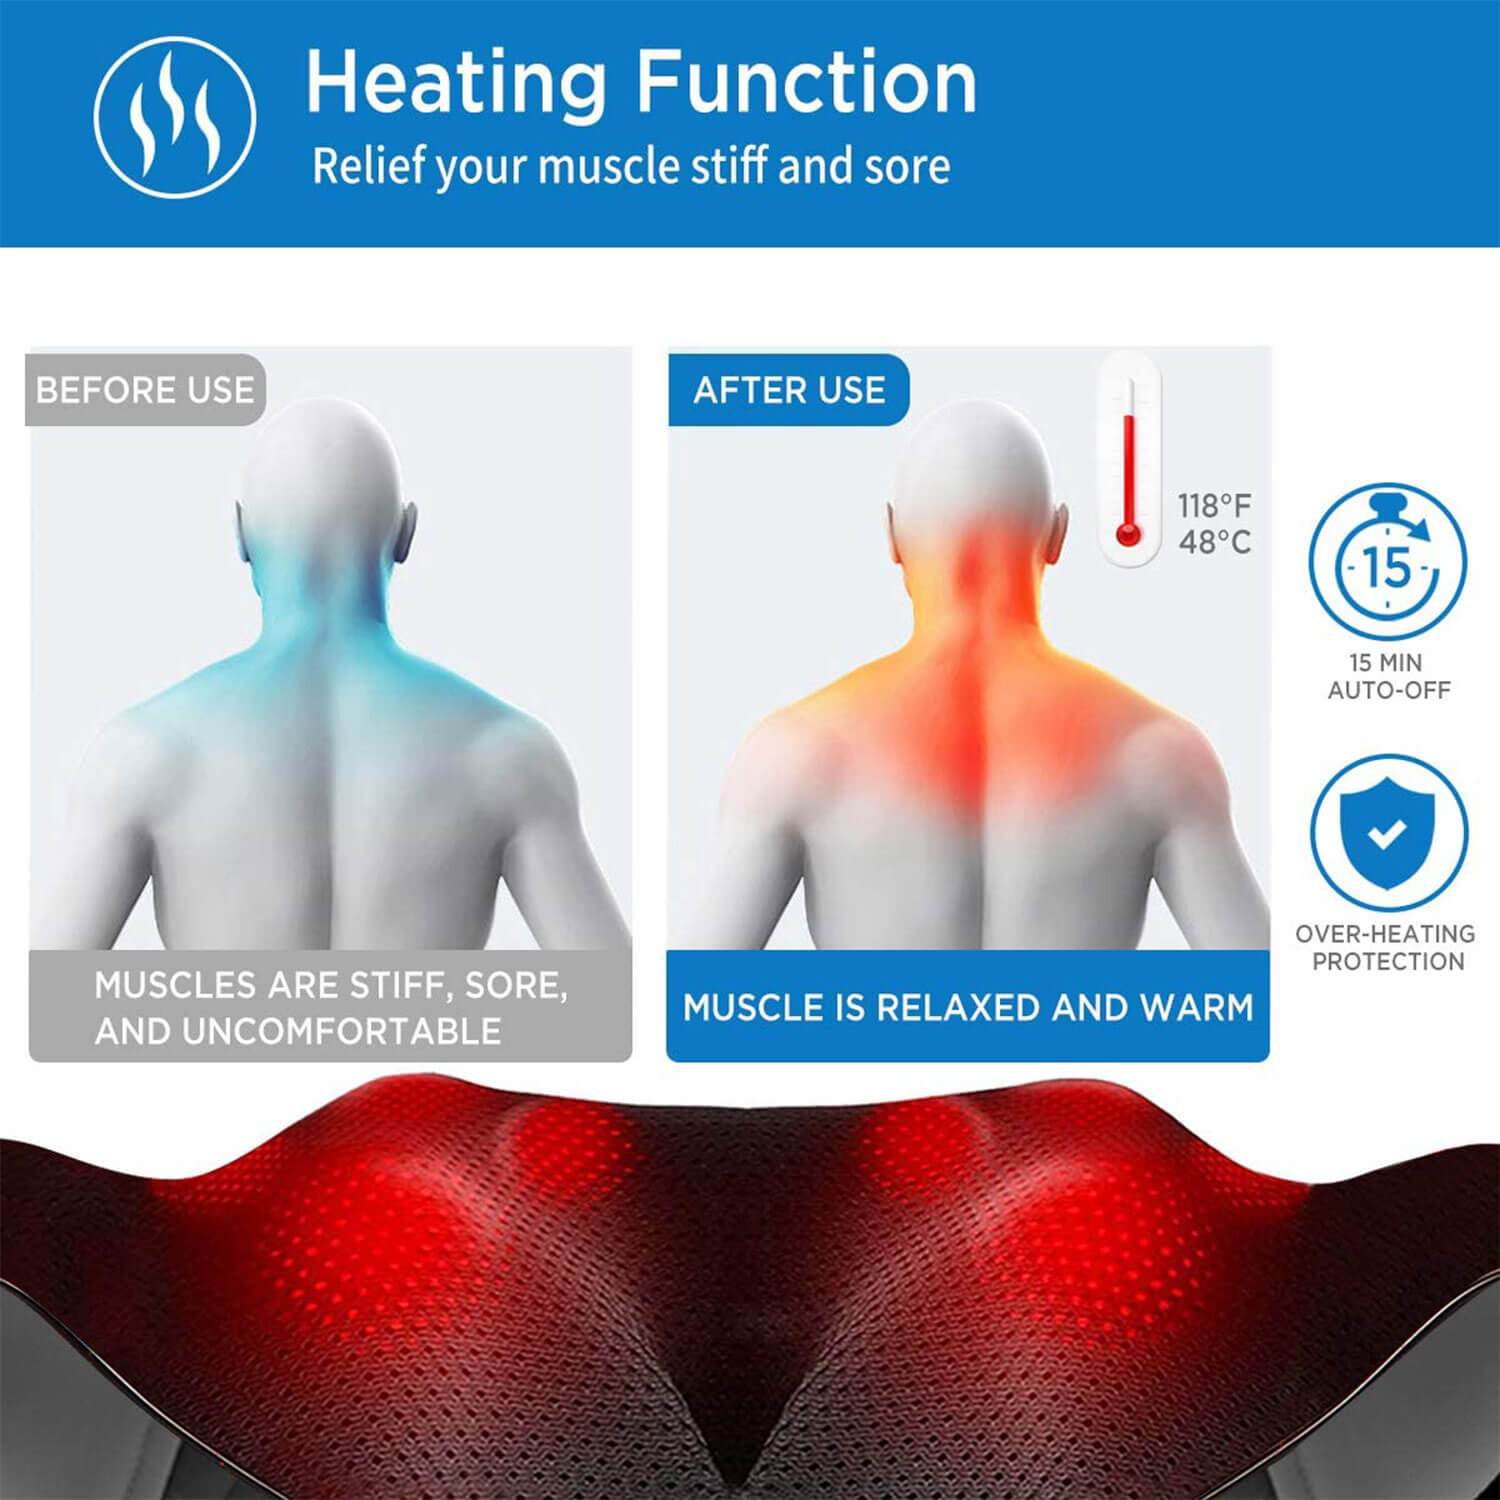 Das Bild veranschaulicht die Wirkung eines Renpho DE U-Neck 2 Nacken- und Schultermassagegeräts mit Wärmetherapie auf Muskelverspannungen. Es werden zwei menschliche Modelle gezeigt; das linke Modell in Blau zeigt steife und unangenehme Muskeln vor der Anwendung.